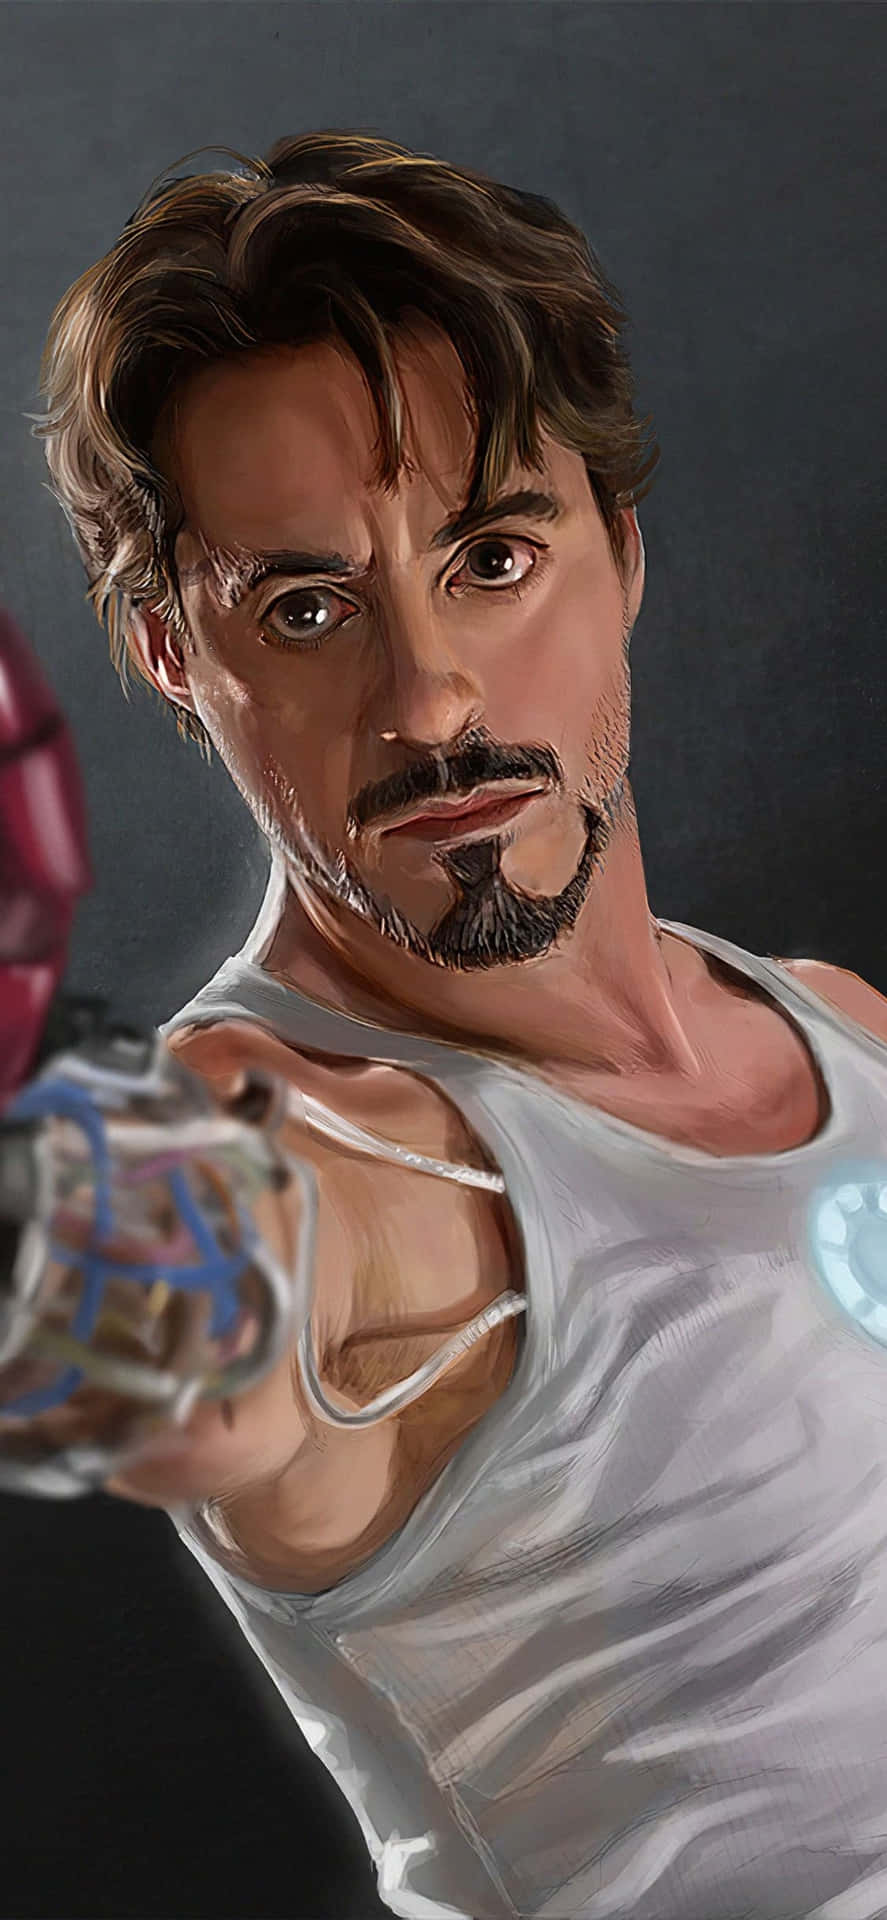 Fundode Tela Do Iphone X Do Homem De Ferro Tony Stark Sem Sua Armadura.